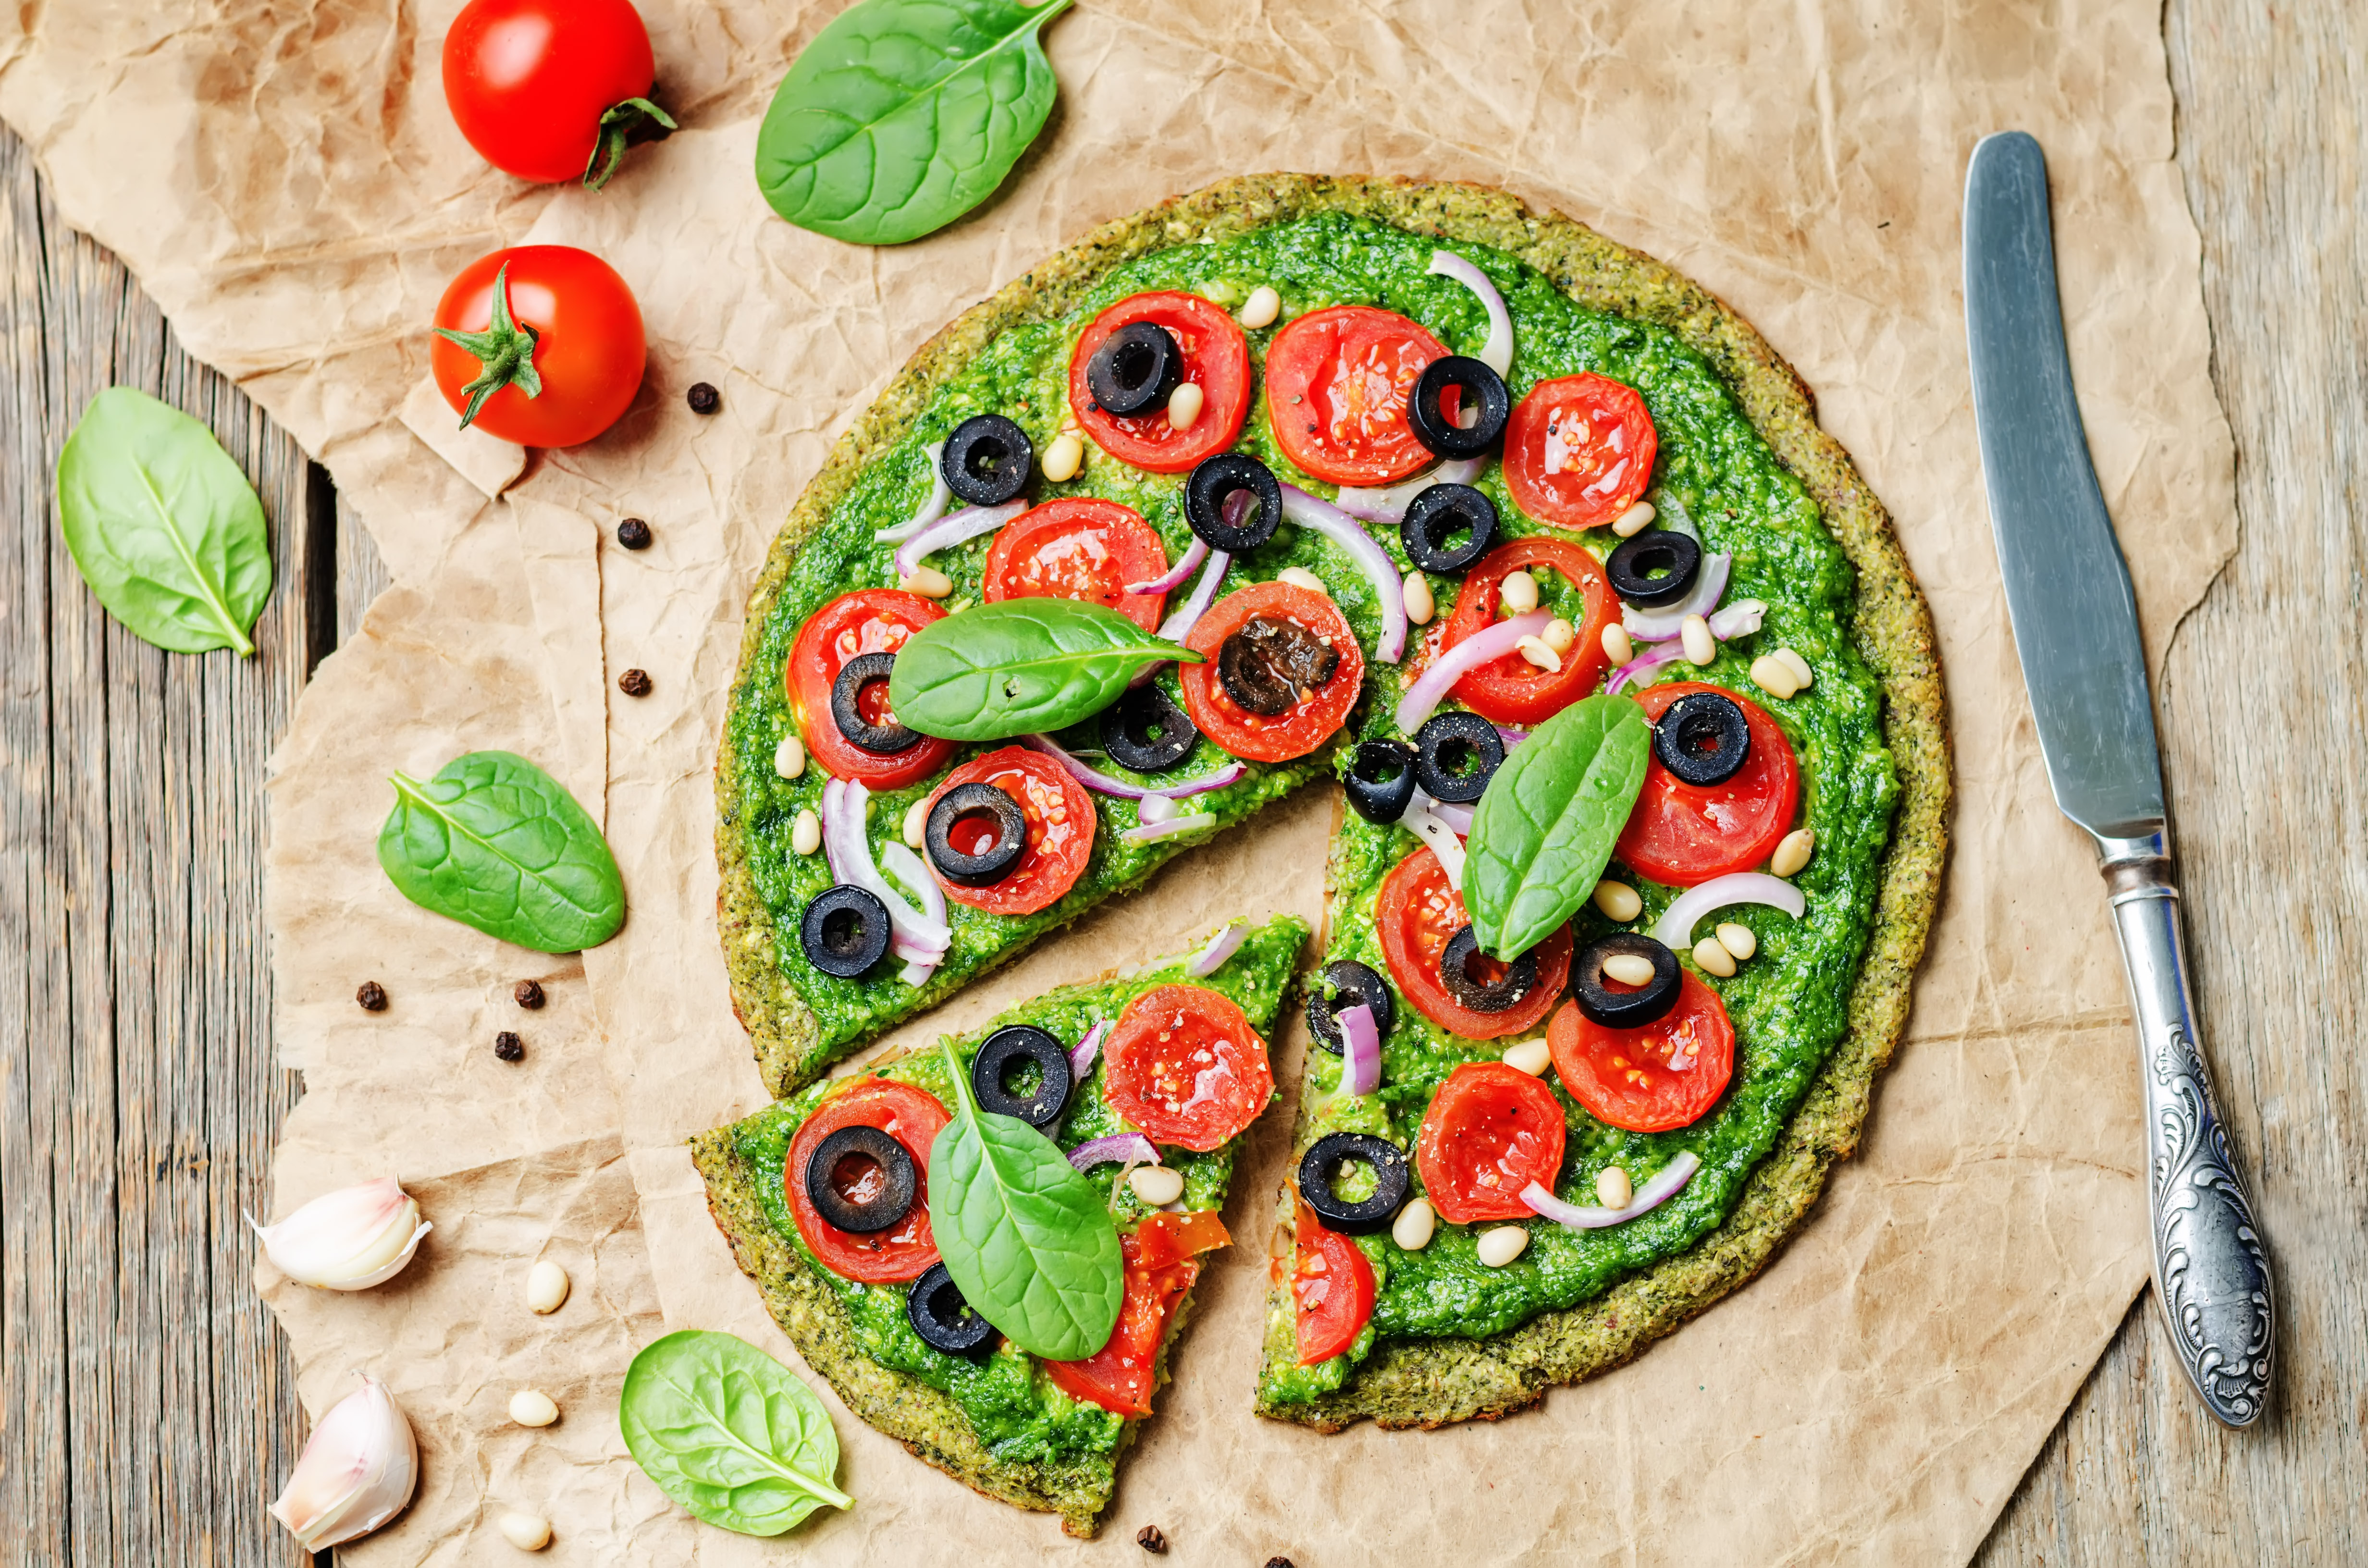 Top 10 egészséges(ebb) pizzatészta | Nosalty